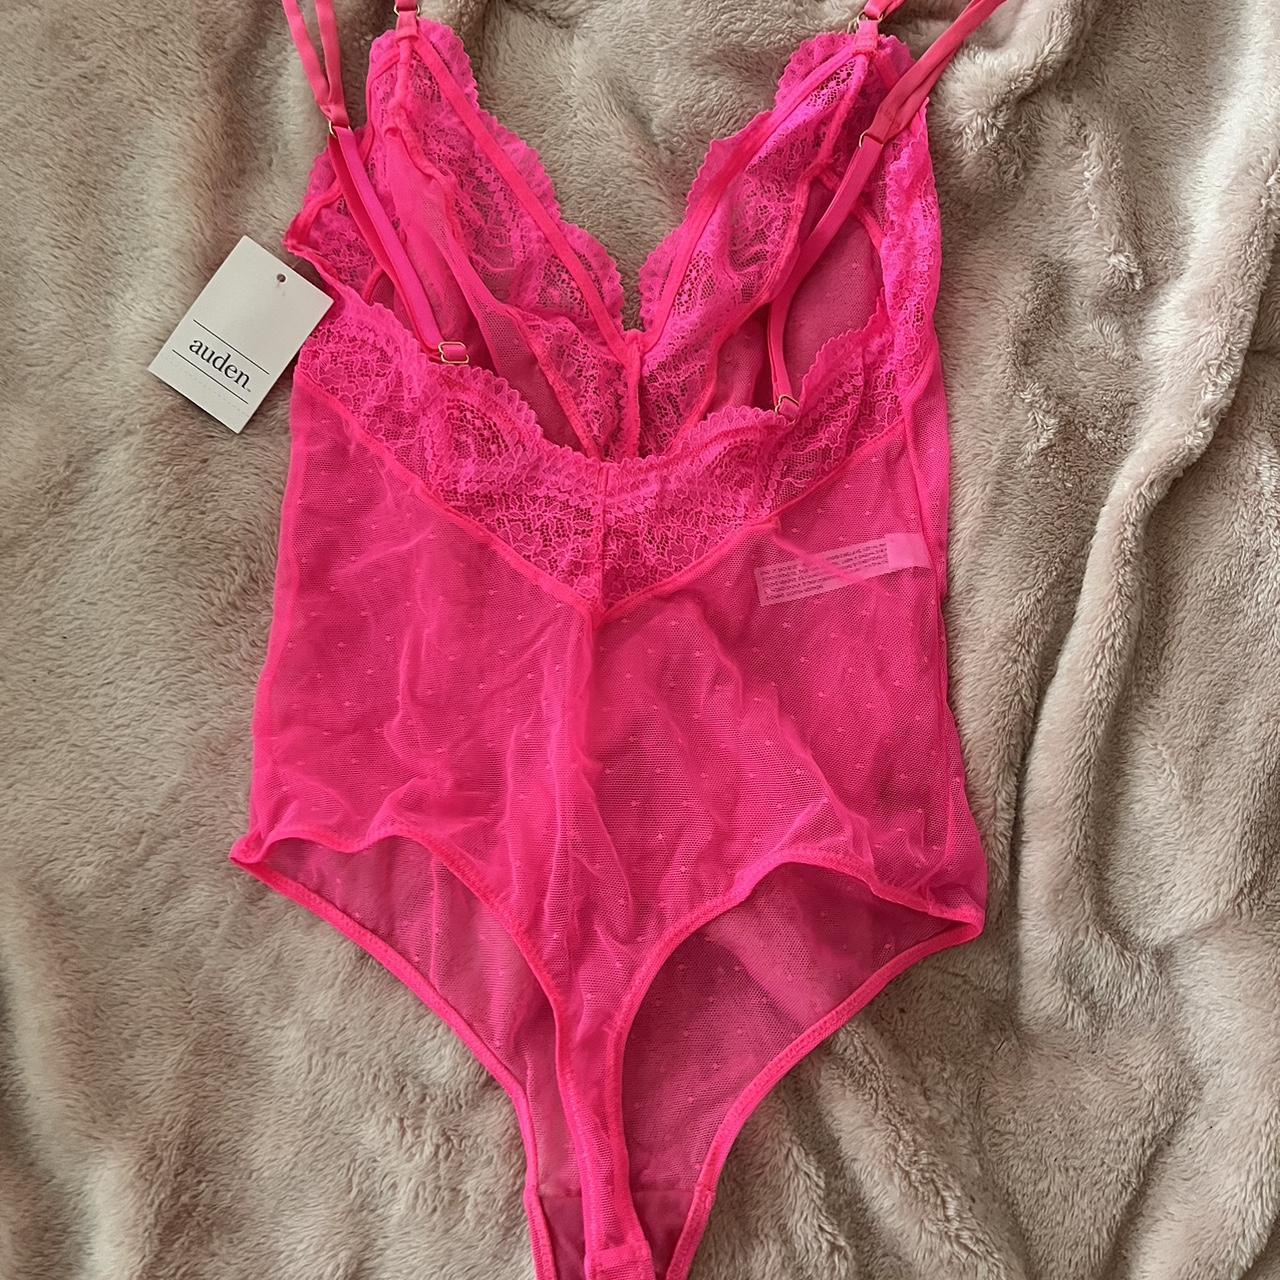 NEW Auden lingerie hot pink lace bodysuit!! SIZE XS, - Depop